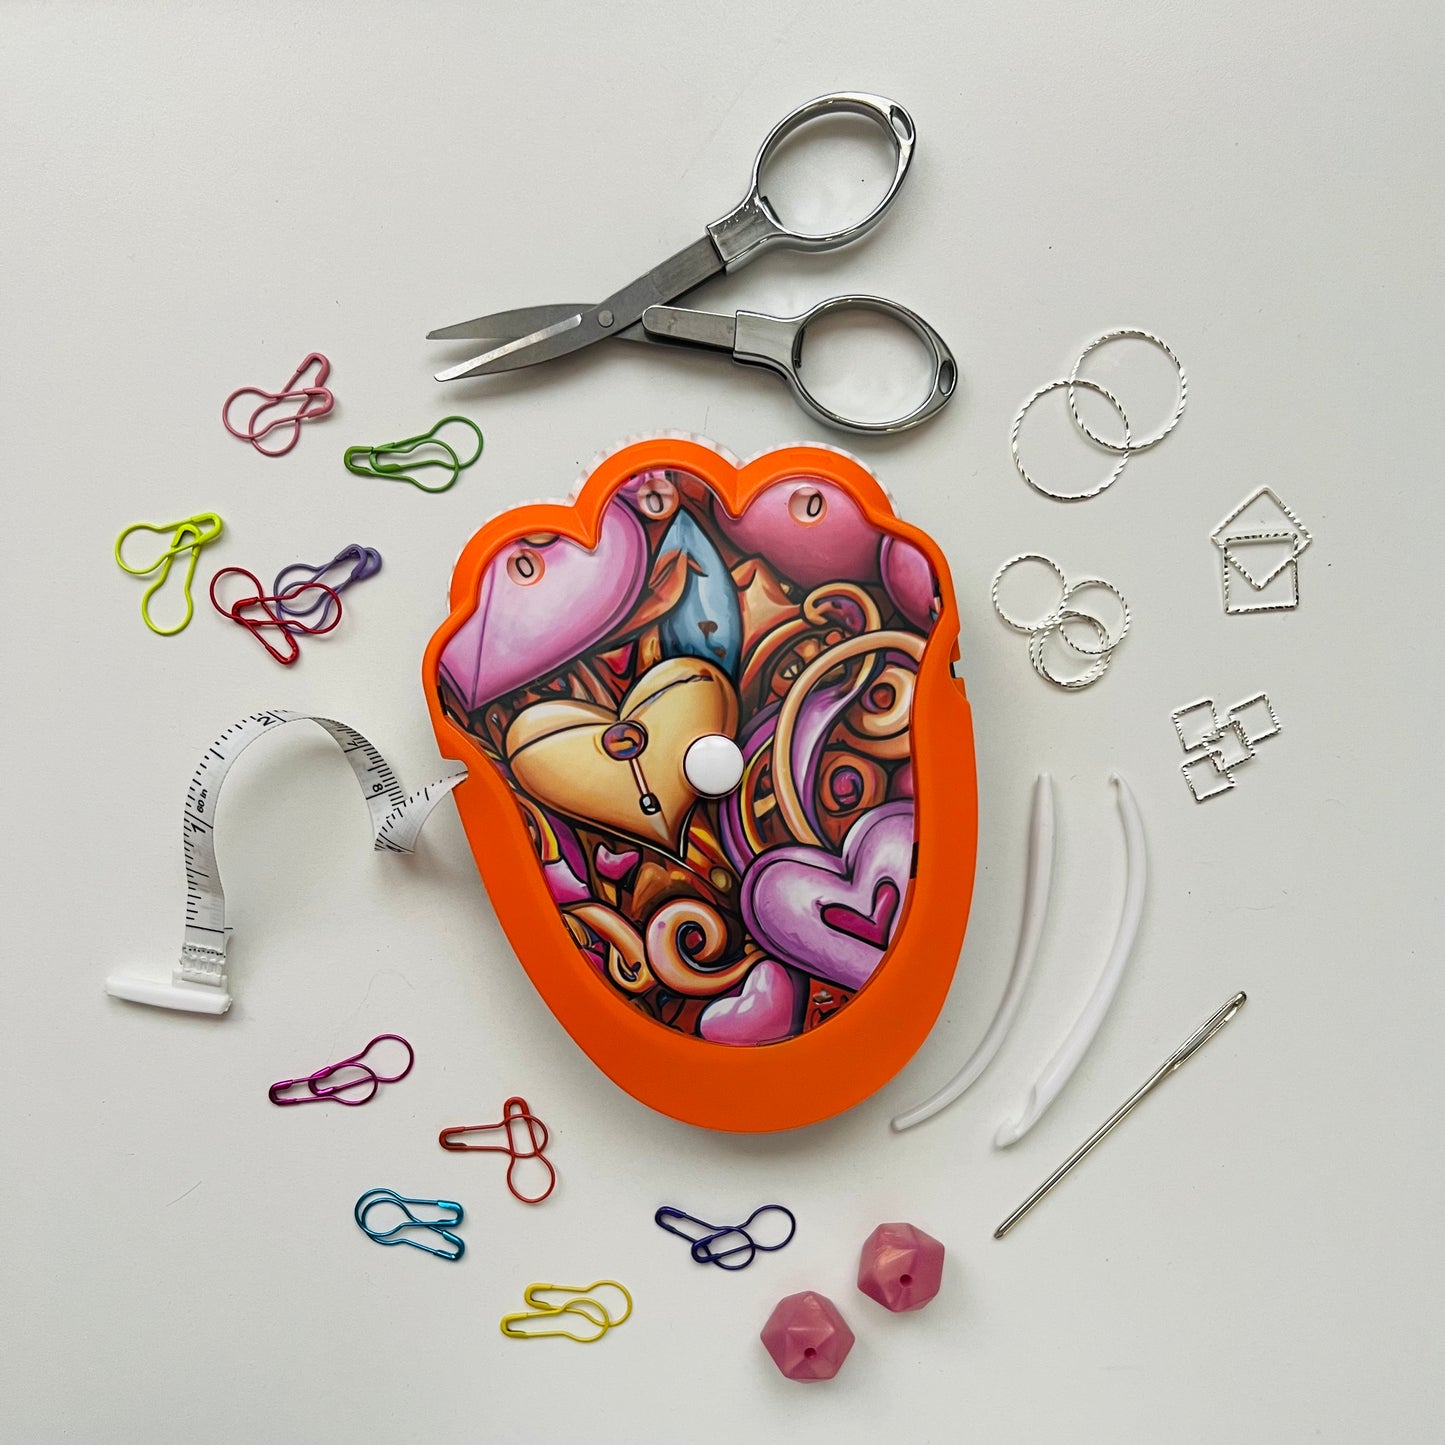 The Knit & Crochet Kit - Knitting & Crochet Tool Kit- Heart You!